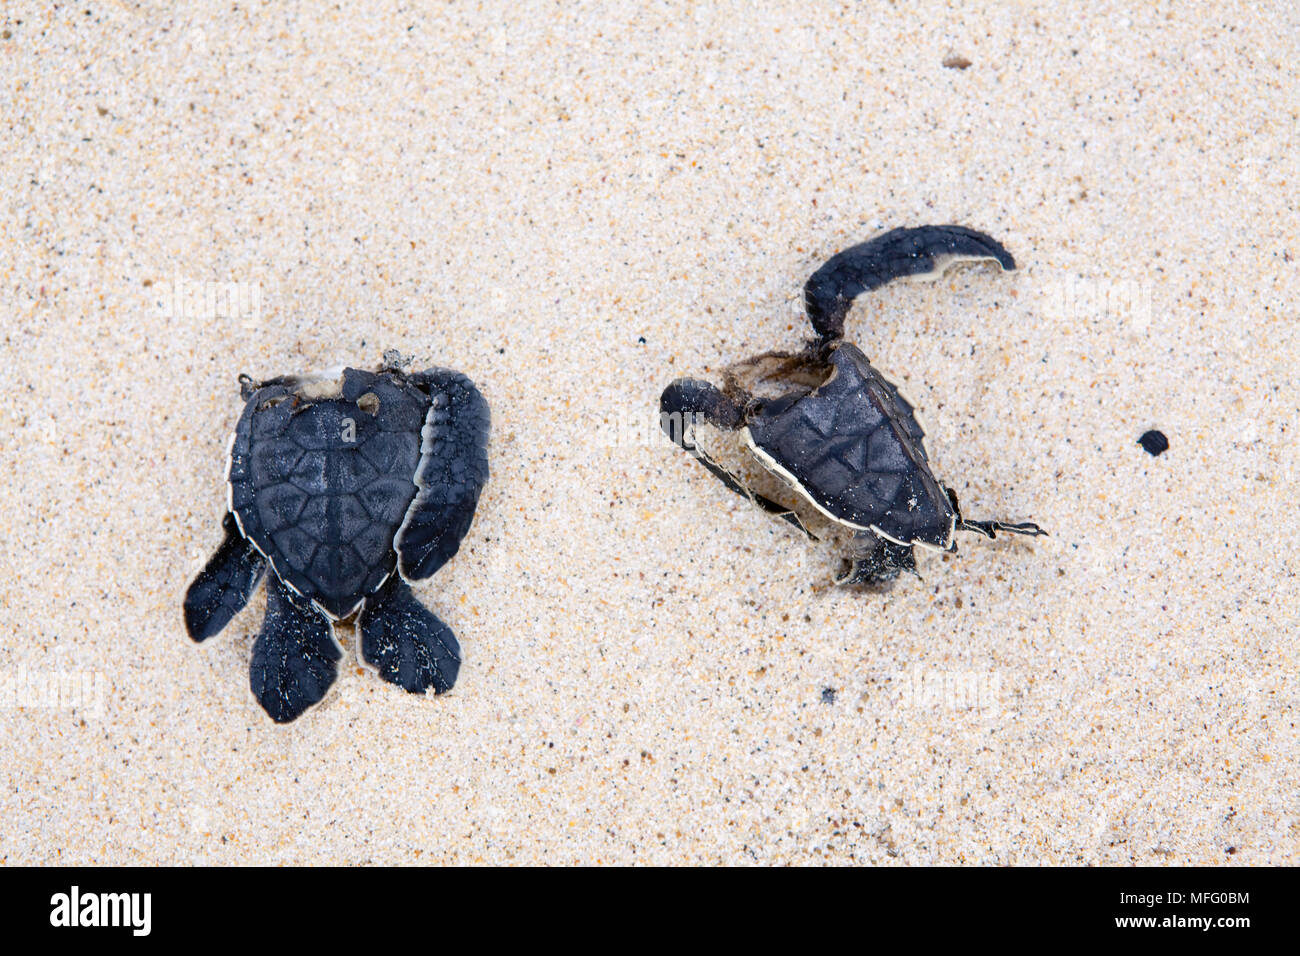 Bébé mort, la carapace des tortues, l'île Cormorant Floreana, Galapagos, l'UNESCO Site du patrimoine mondial naturel, l'Équateur, à l'Est de l'Océan Pacifique Banque D'Images